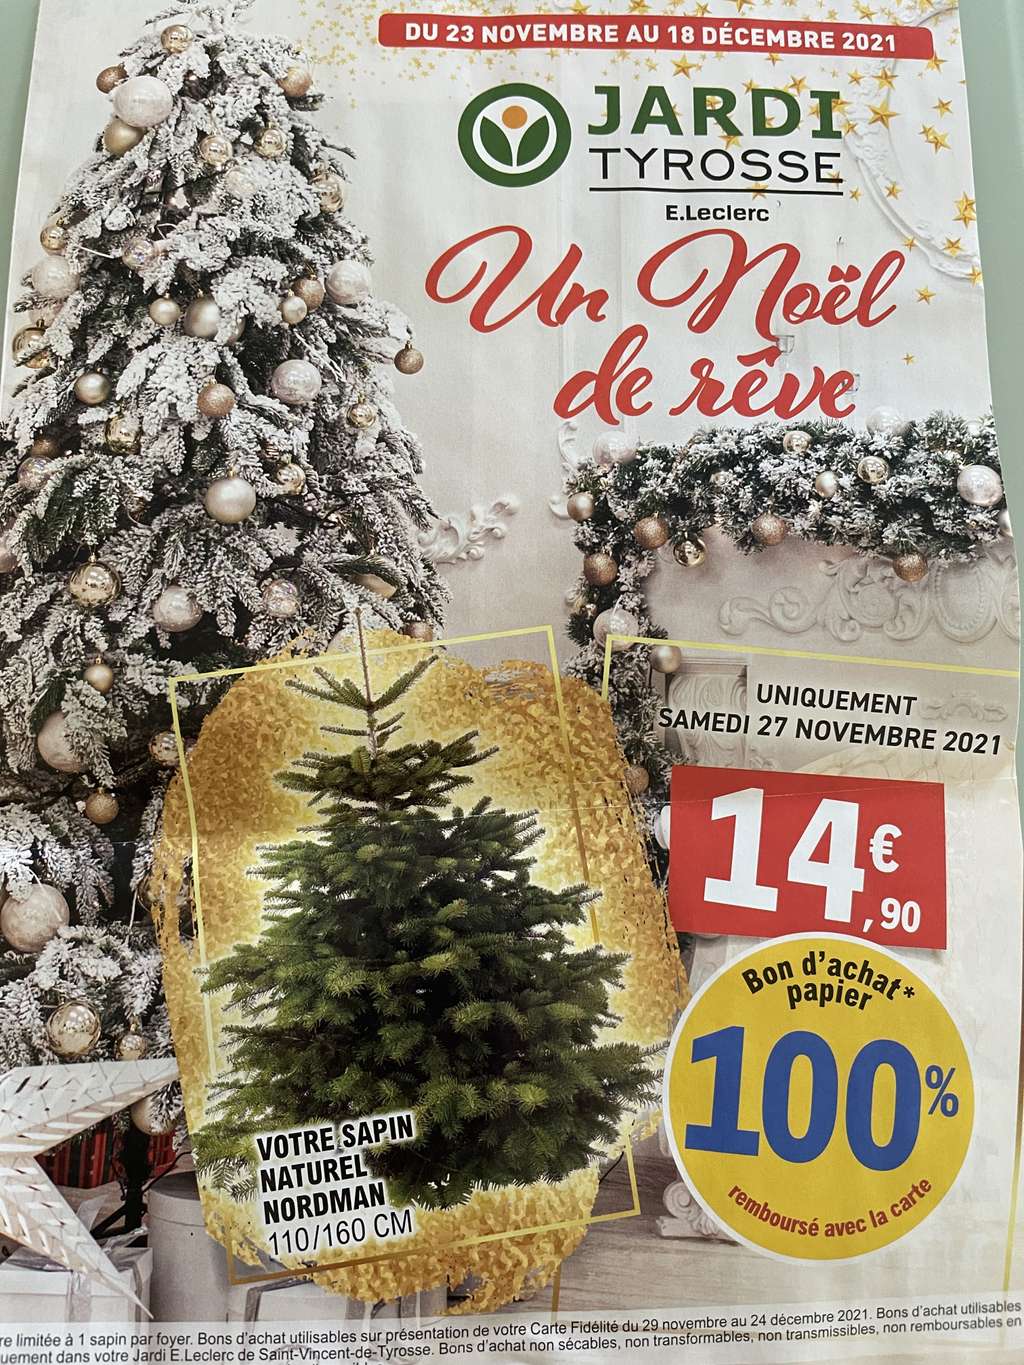 [Fidélité] Sapin naturel Nordmann 100% remboursé en bon d’achat - Saint-Vincent-de-Tyrosse (40)